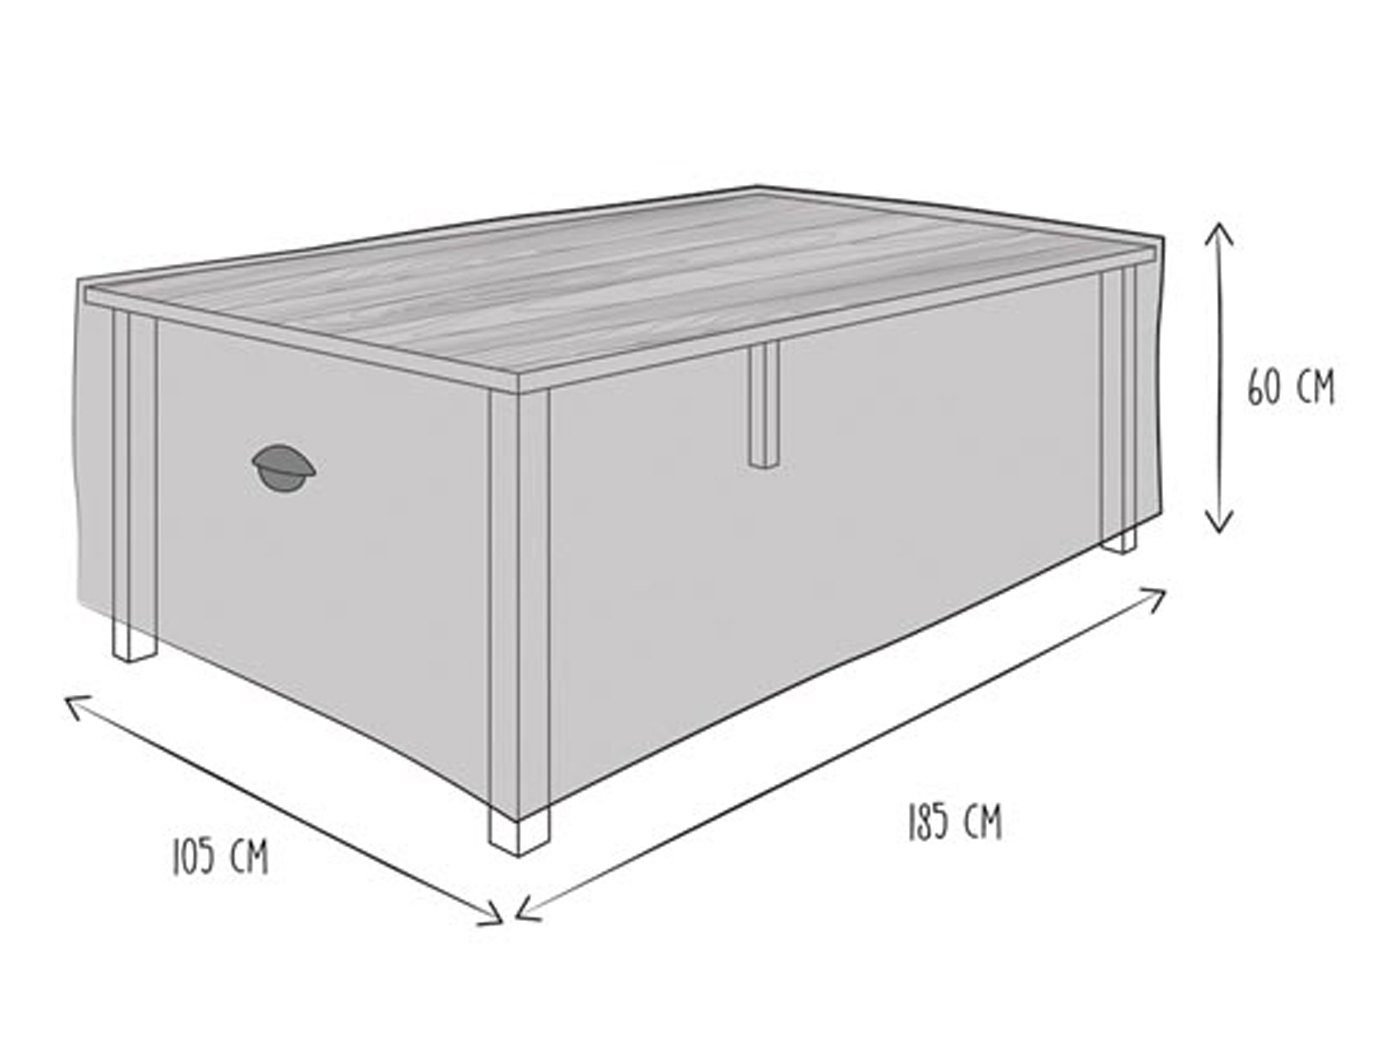 Tisch-Unterlage DriftDisney CarsKinder Platz-Set-Deckchen40 x 28 cm 